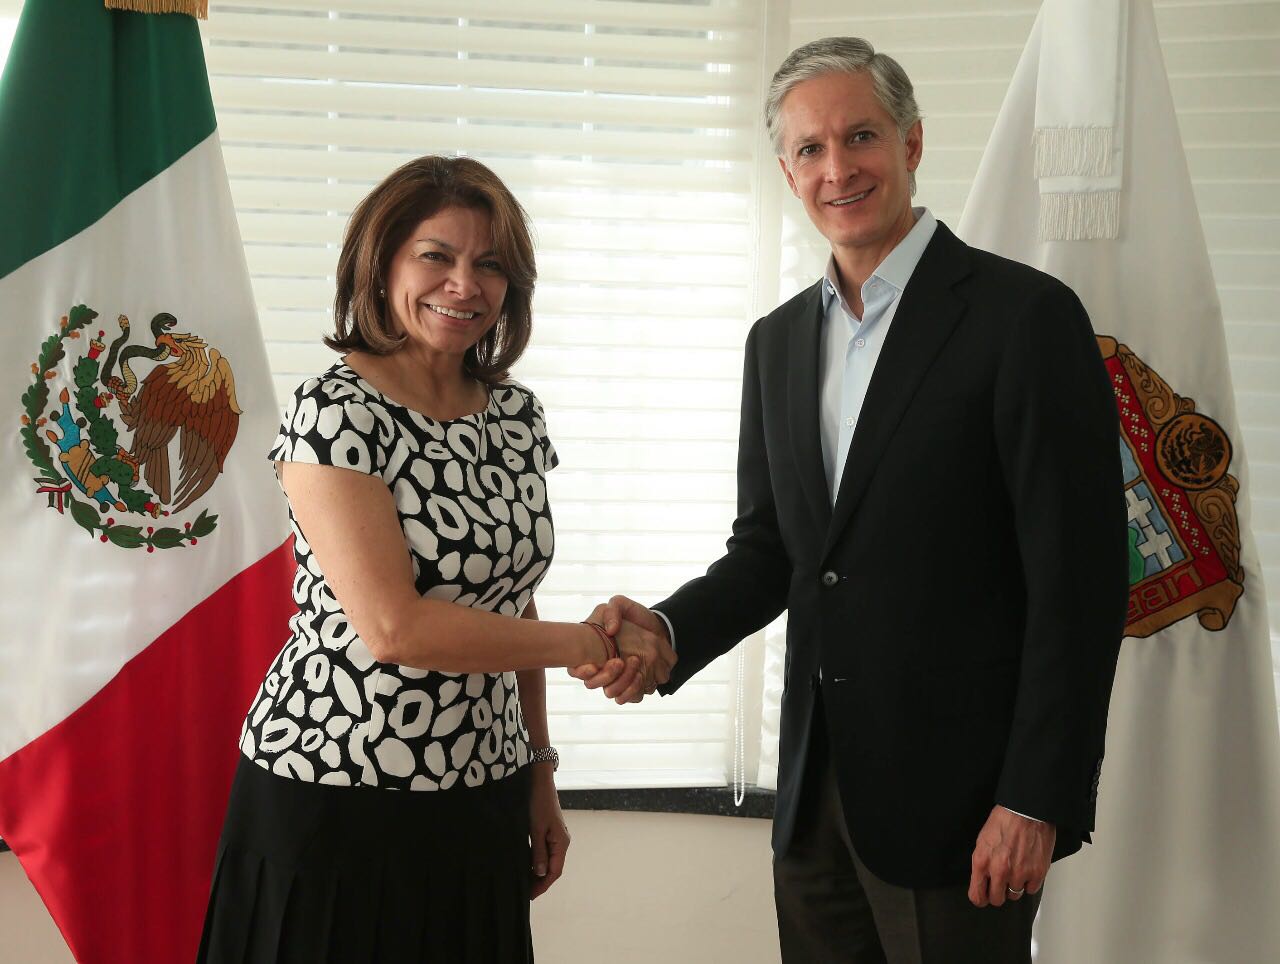 México tiene más oportunidades que problemas, aseguró Ex Presidenta de Costa Rica, Laura Chinchilla